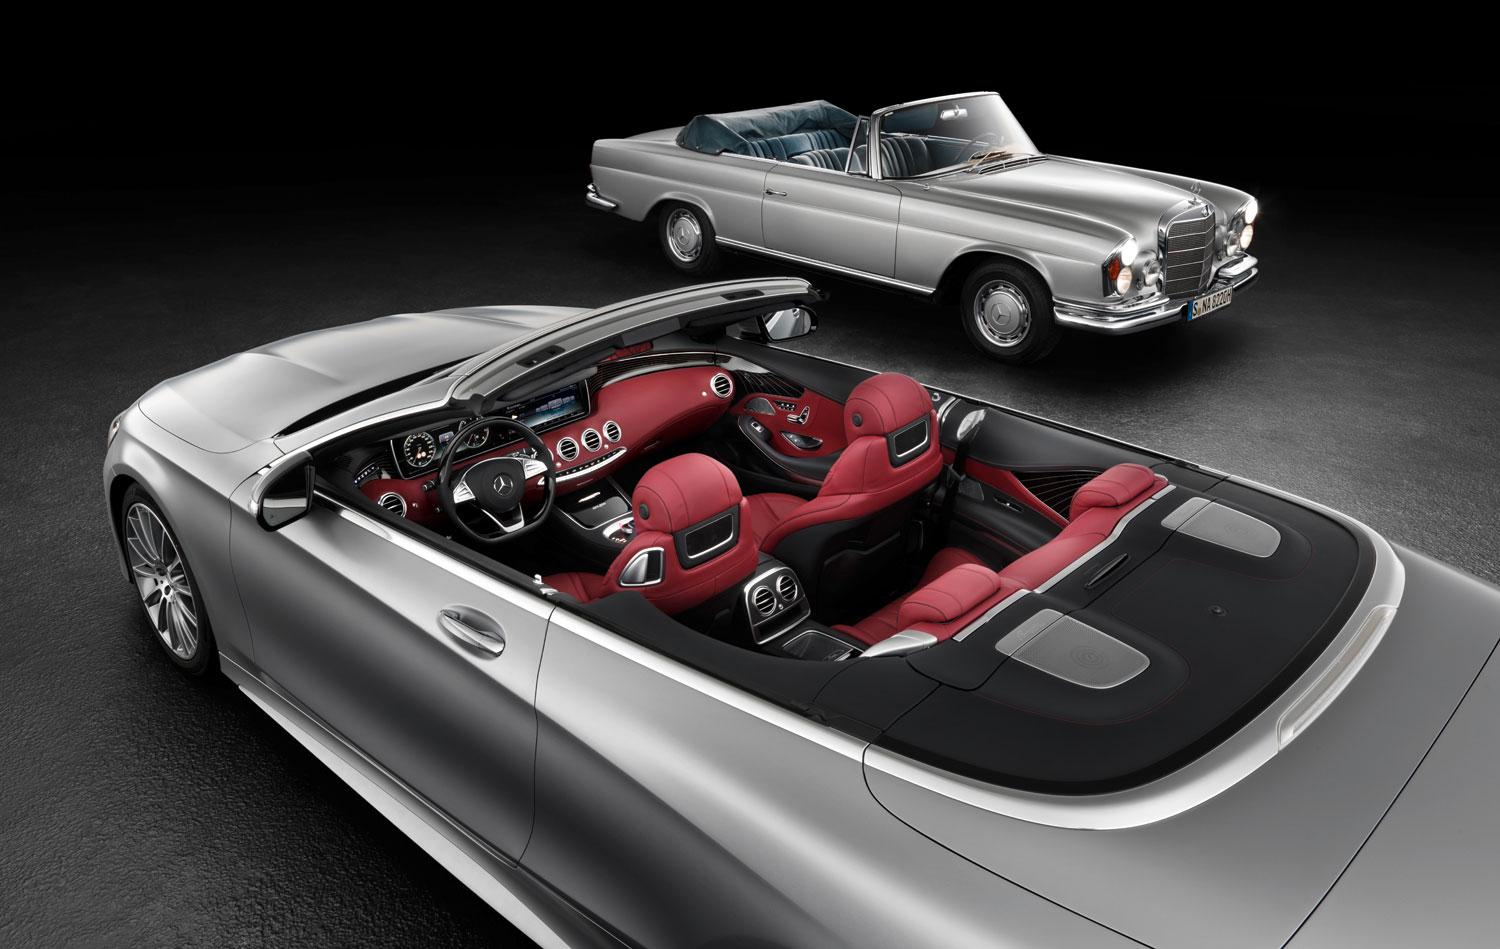 Nya Cabrioleten i förgrunden, i fonden syns den klassiska modellen från 60/70-talet.